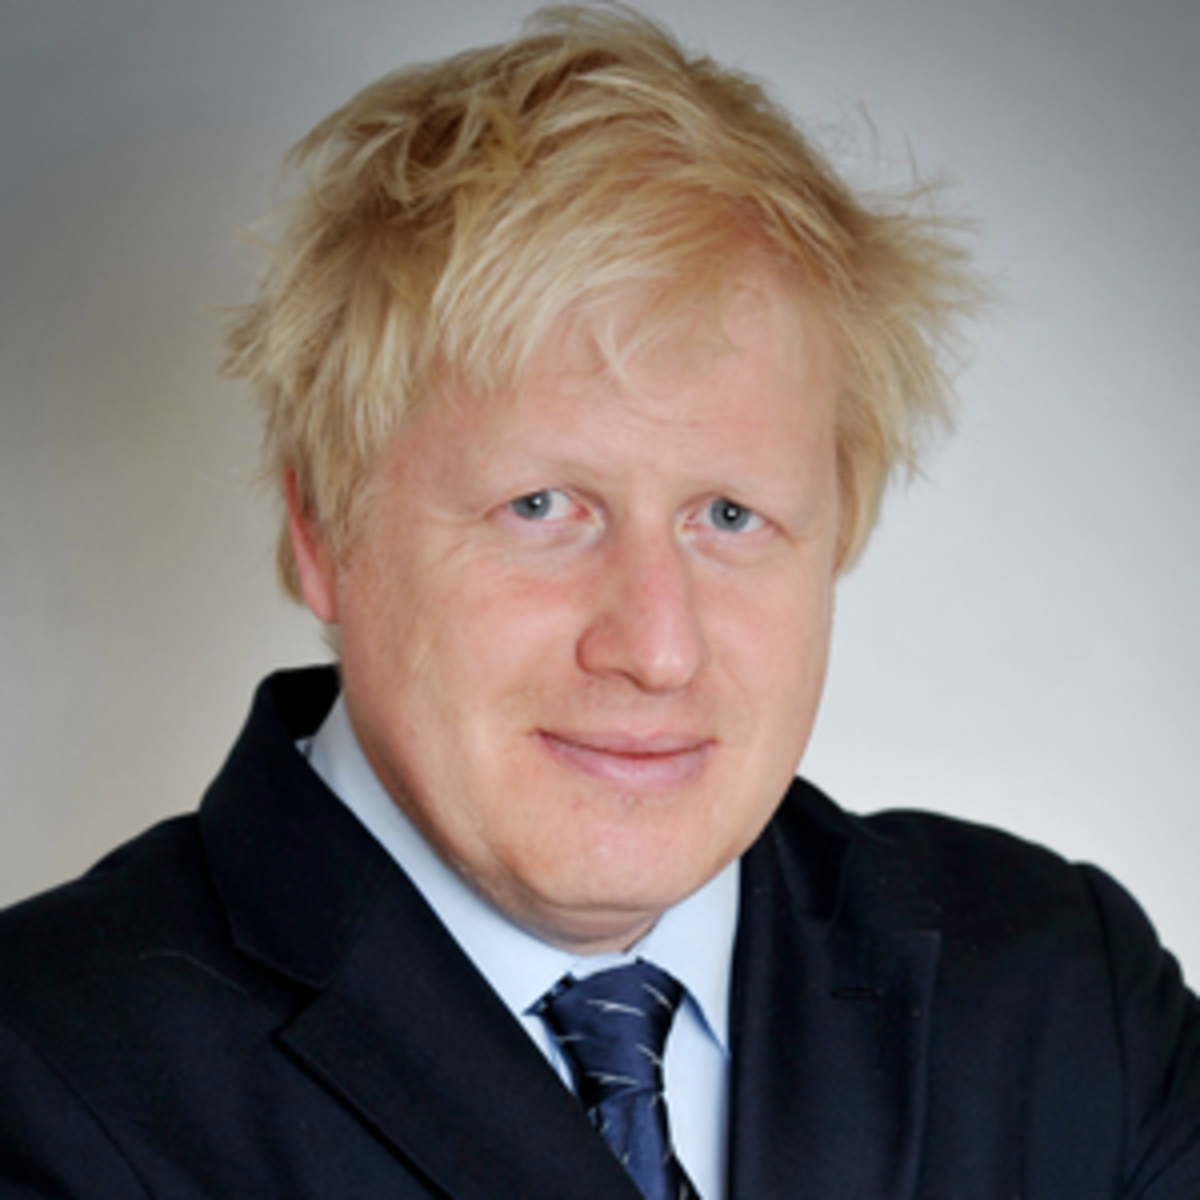 Boris: Optimistic.